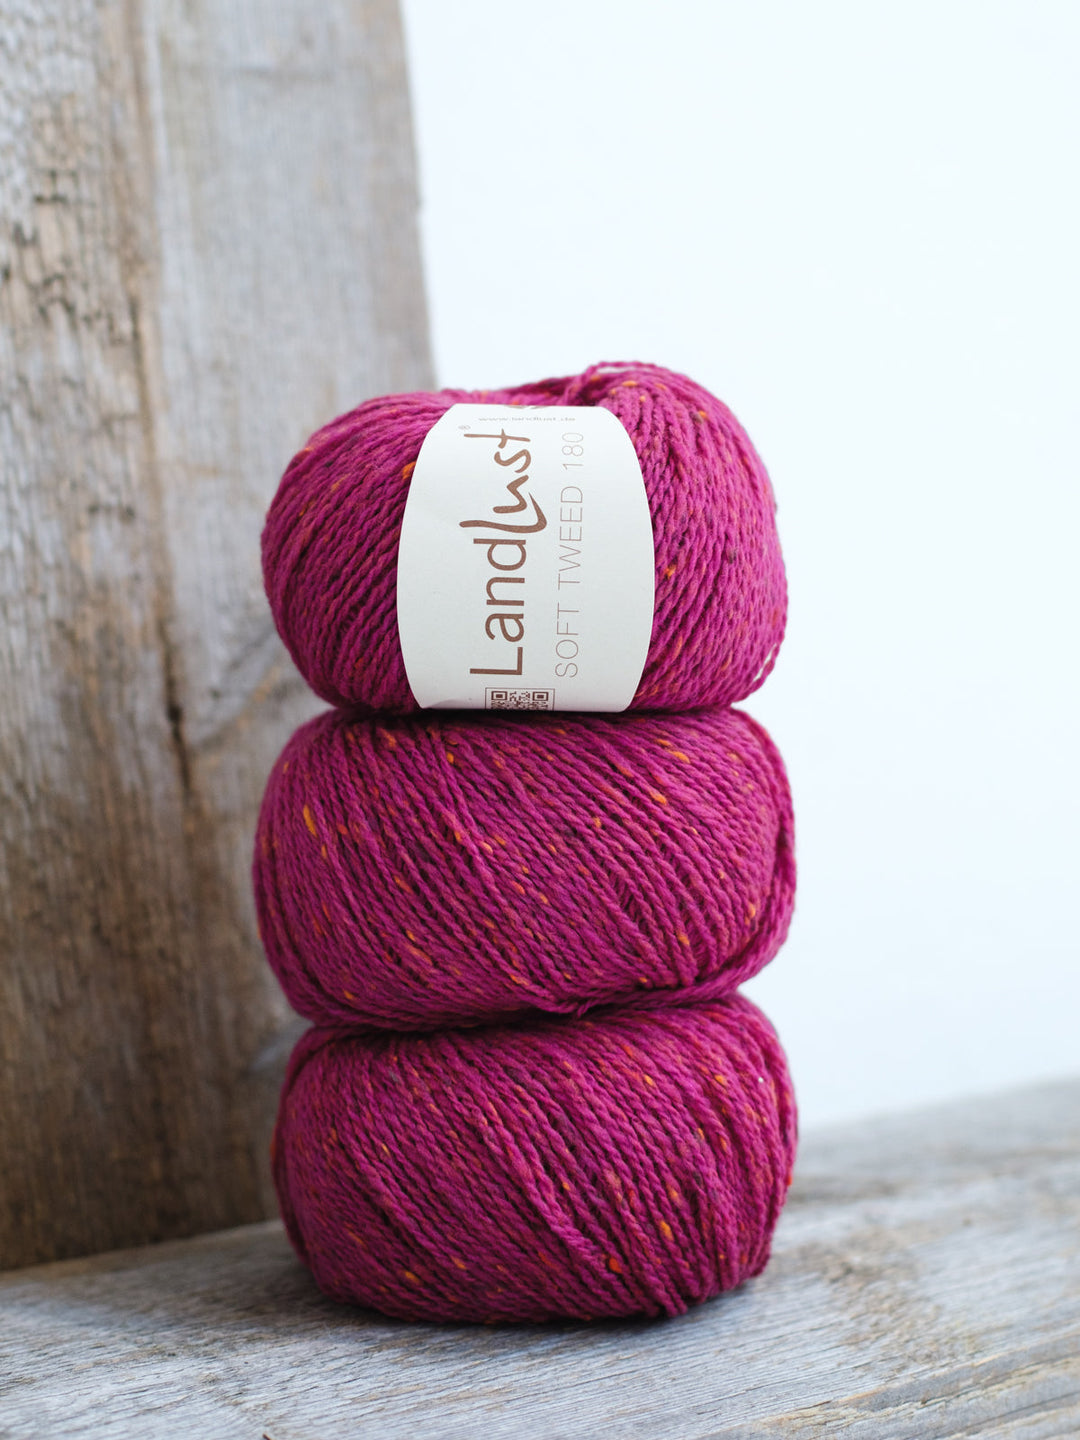 Country Tweed Fine / Landlust Soft Tweed 180 119 Pink